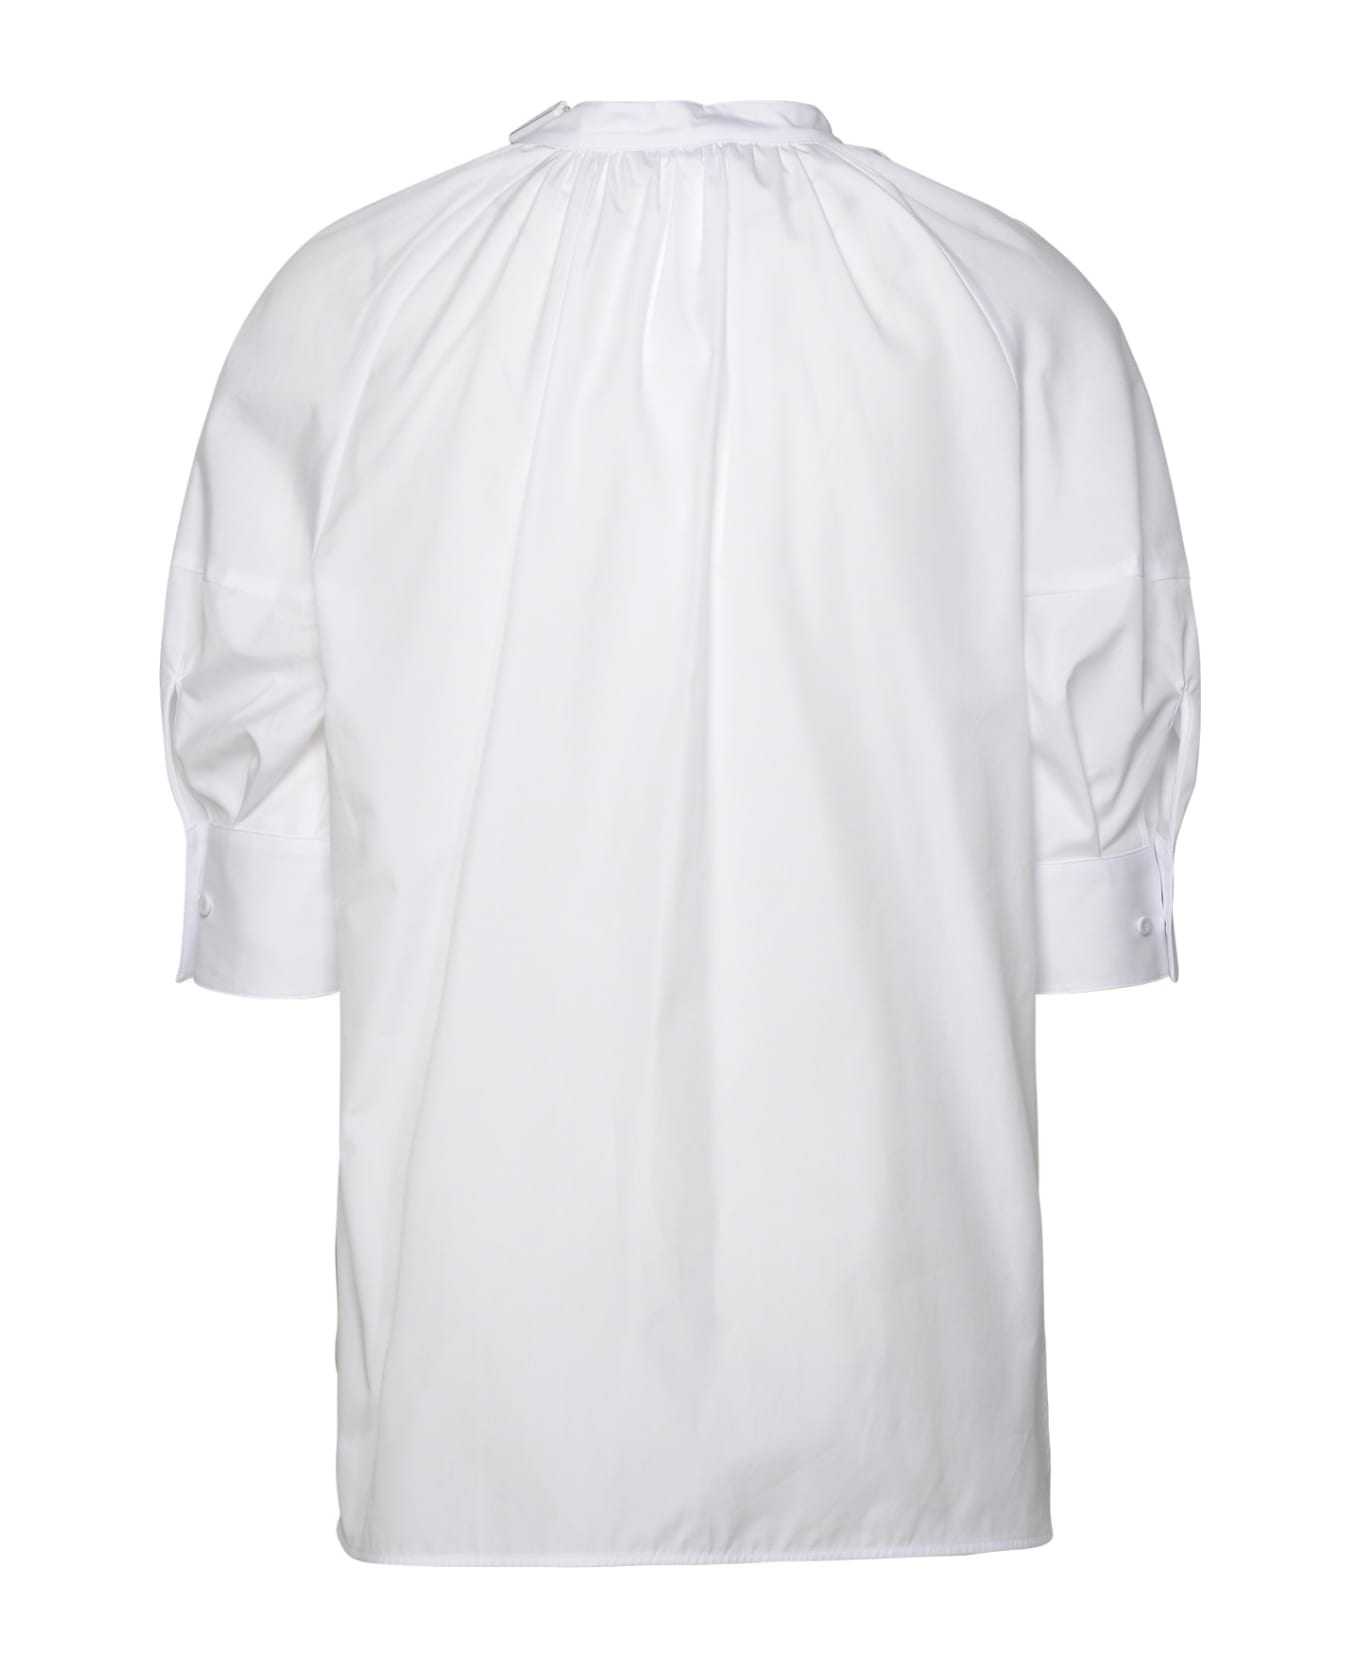 Max Mara 'carpi' White Cotton Shirt - White